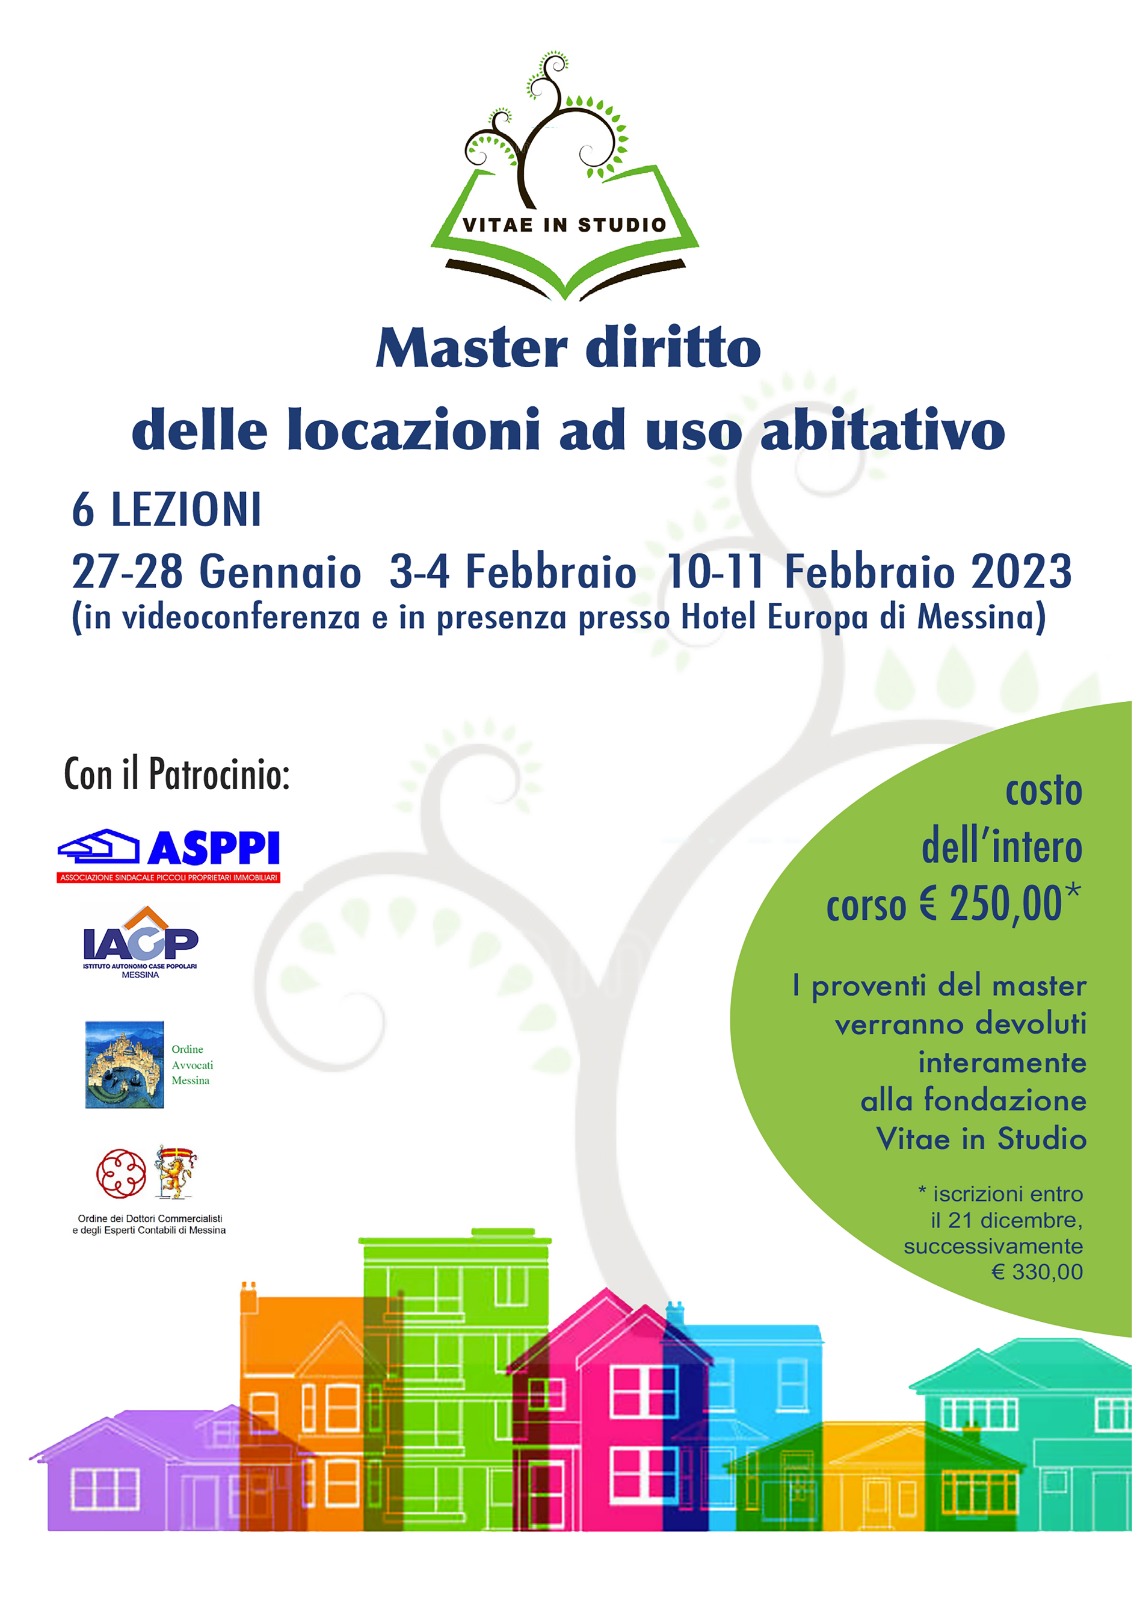 ASPPI Messina: Master diritto delle locazione ad uso abitativo